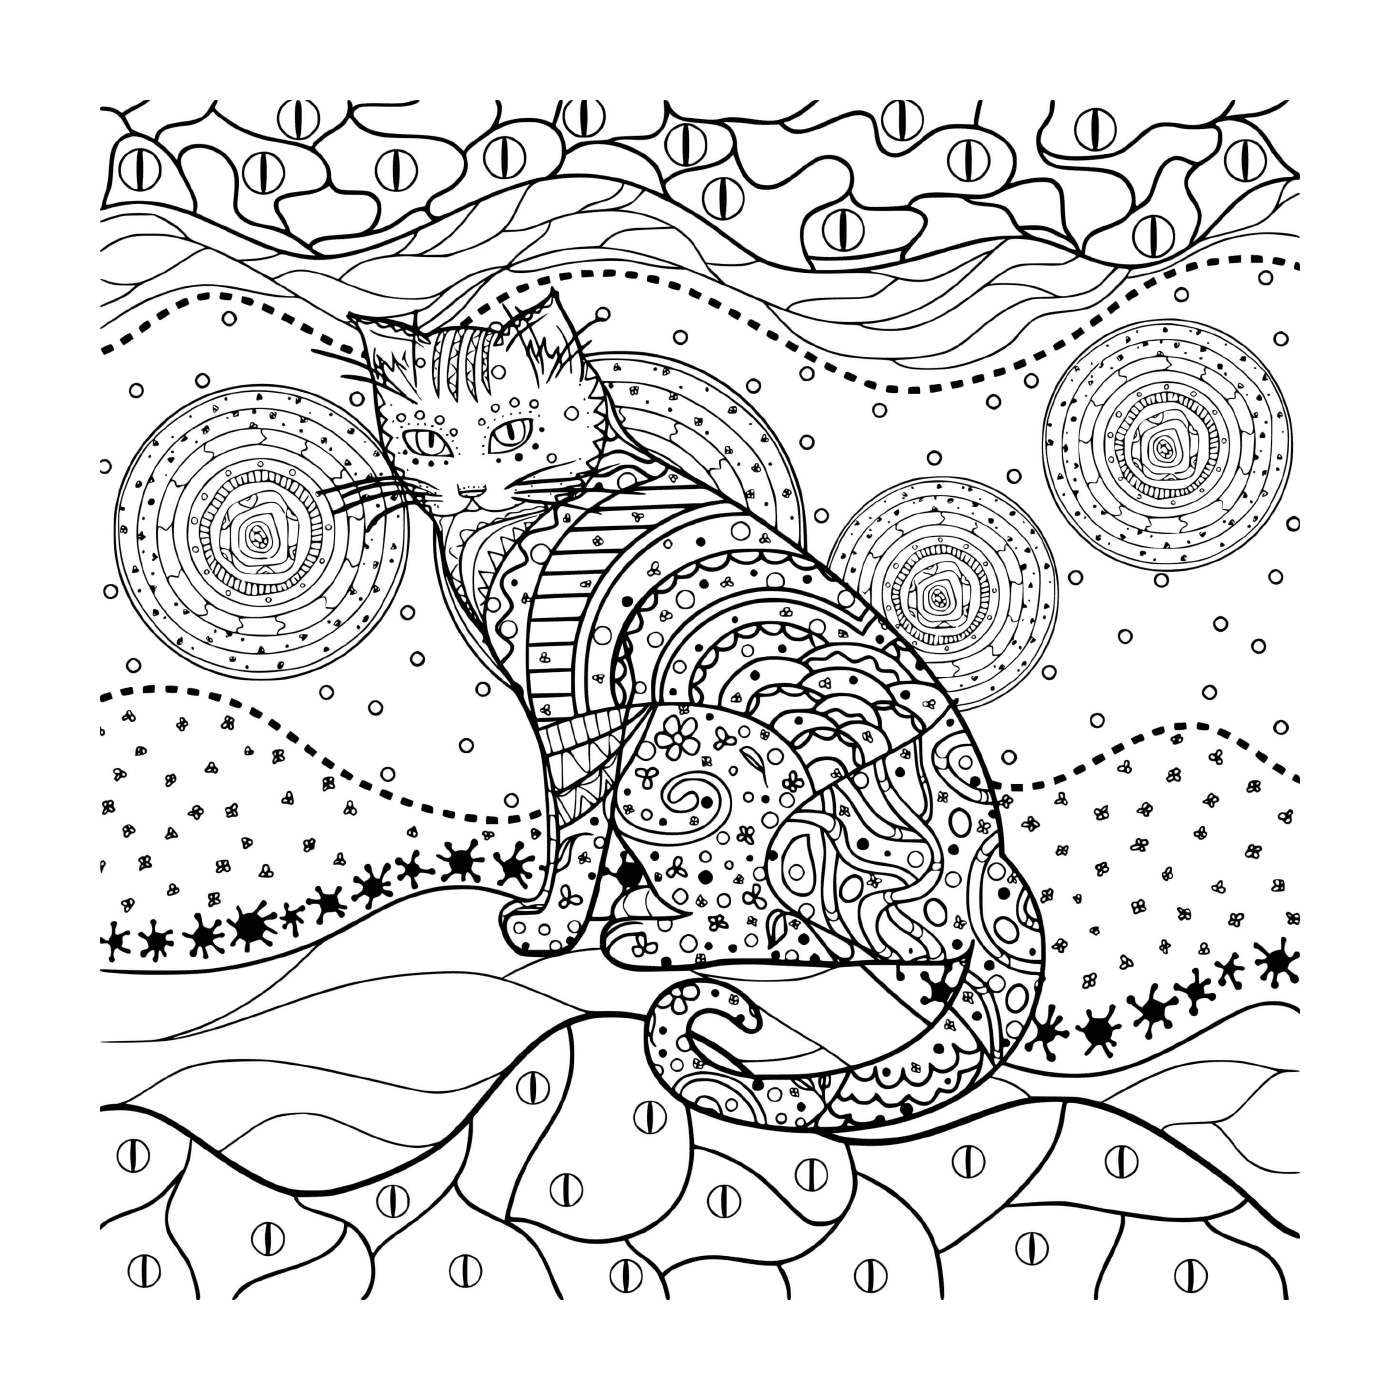  Mandala Katze in einer abwechslungsreichen Landschaft 